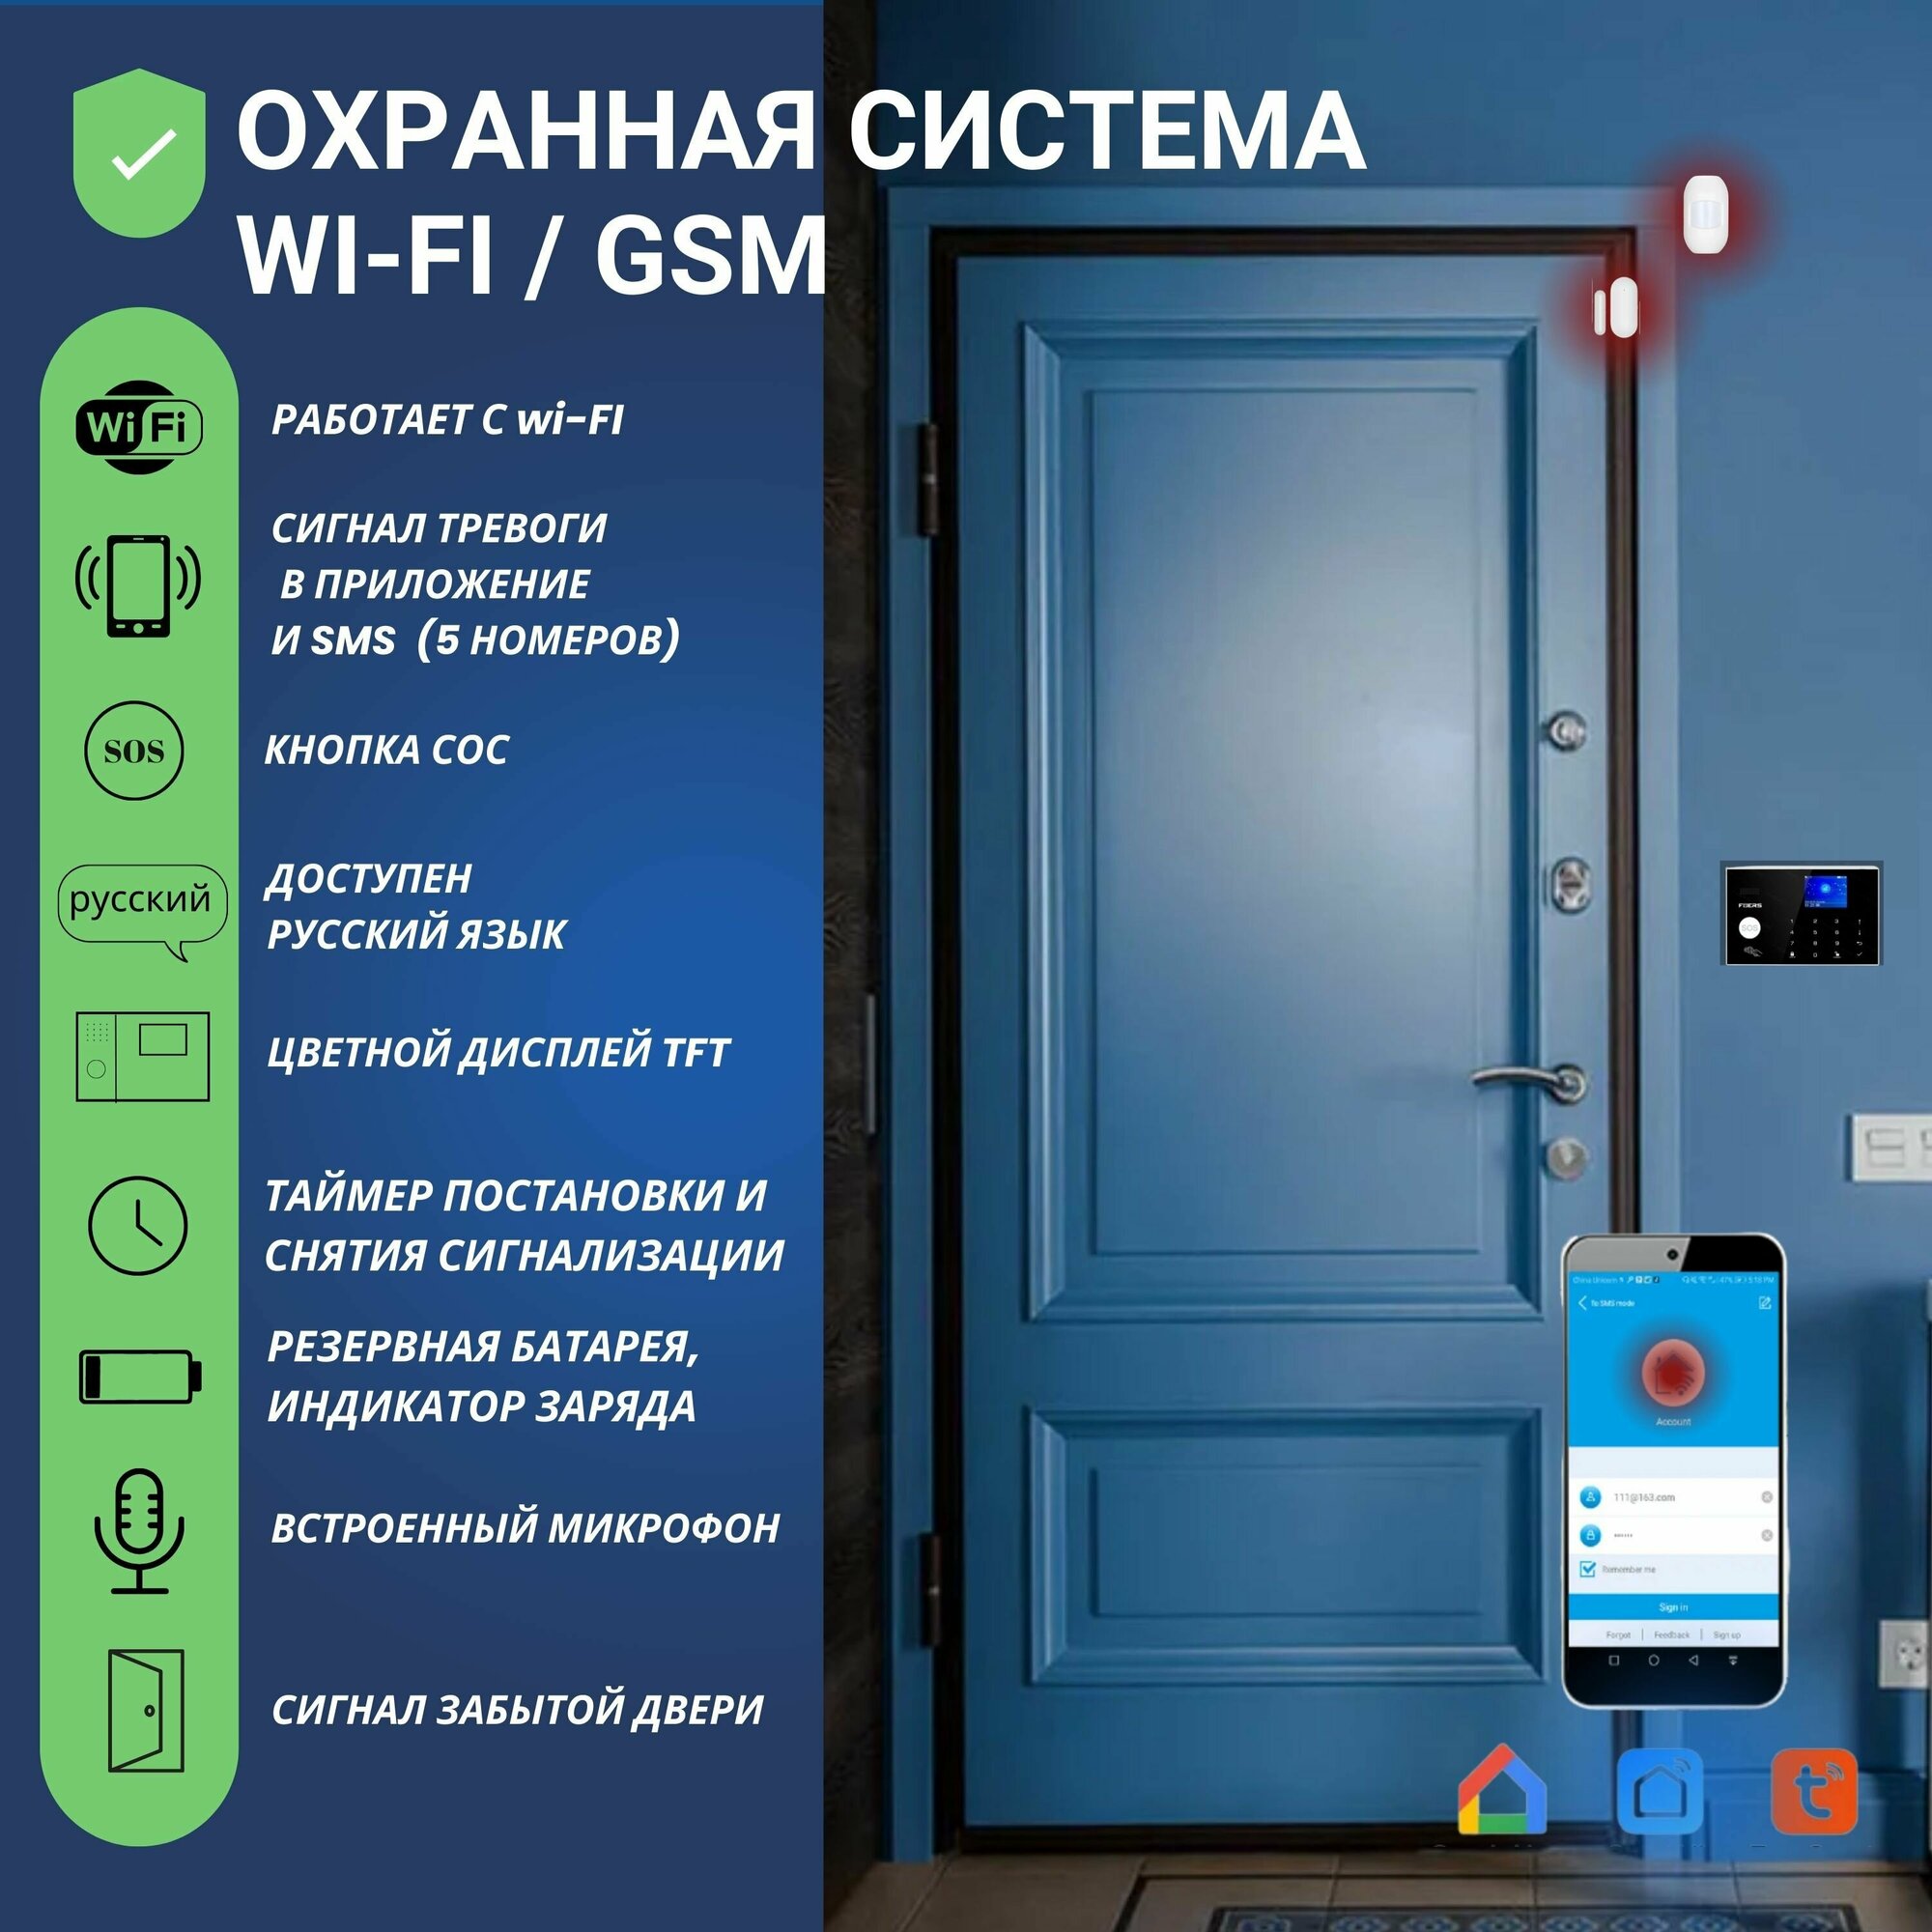 Wi-Fi GSM Охранная сигнализация для дома и офиса, с системой умный дом Smart Life (Tuya), 1 ИК датчик и 1 датчик открытия двери (окна)